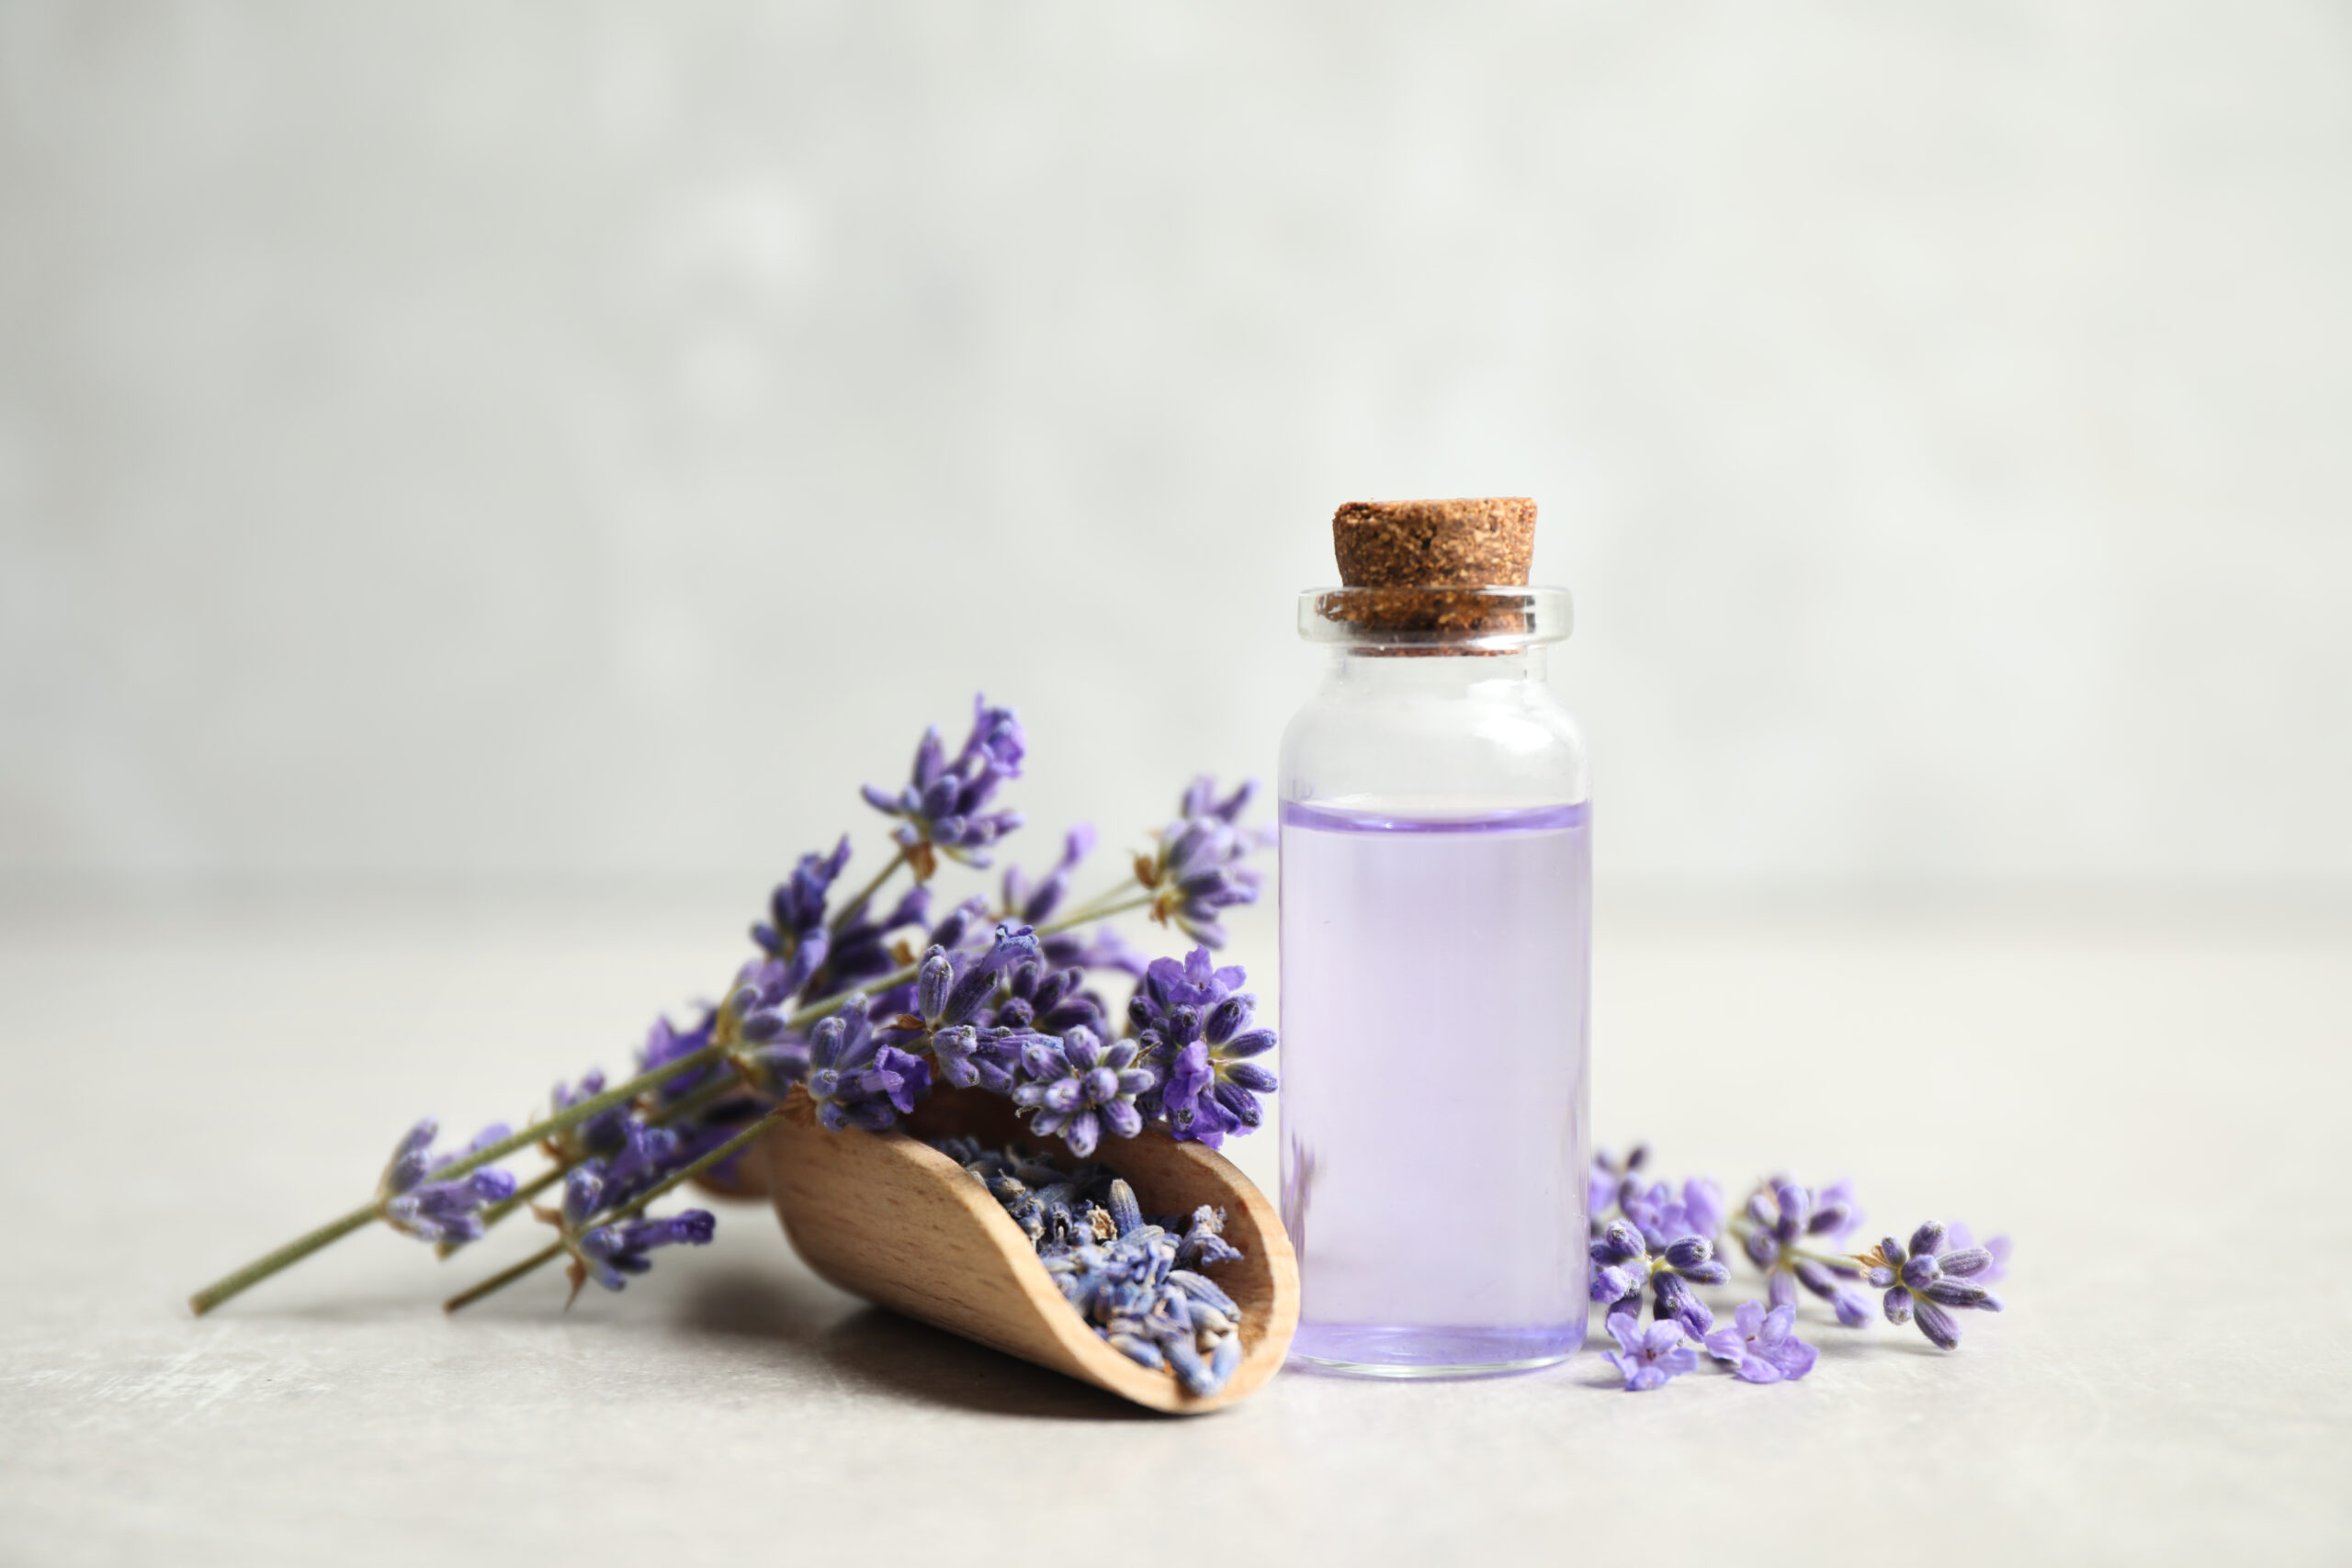 treat burns using lavender oil